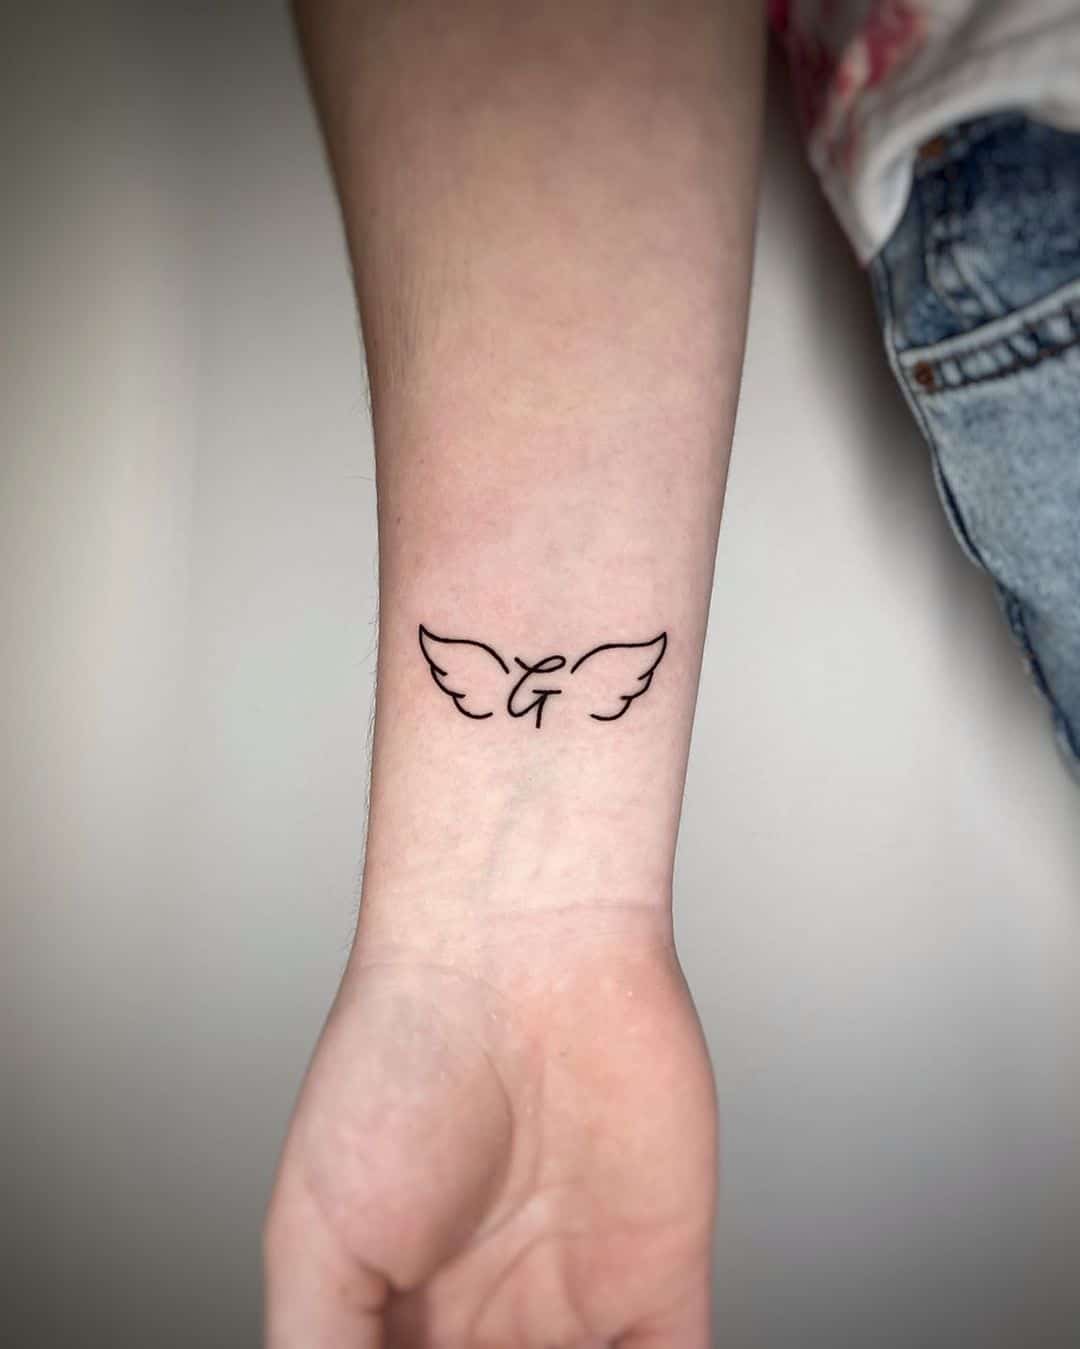 Minimalistic angel wing wrist tattoo